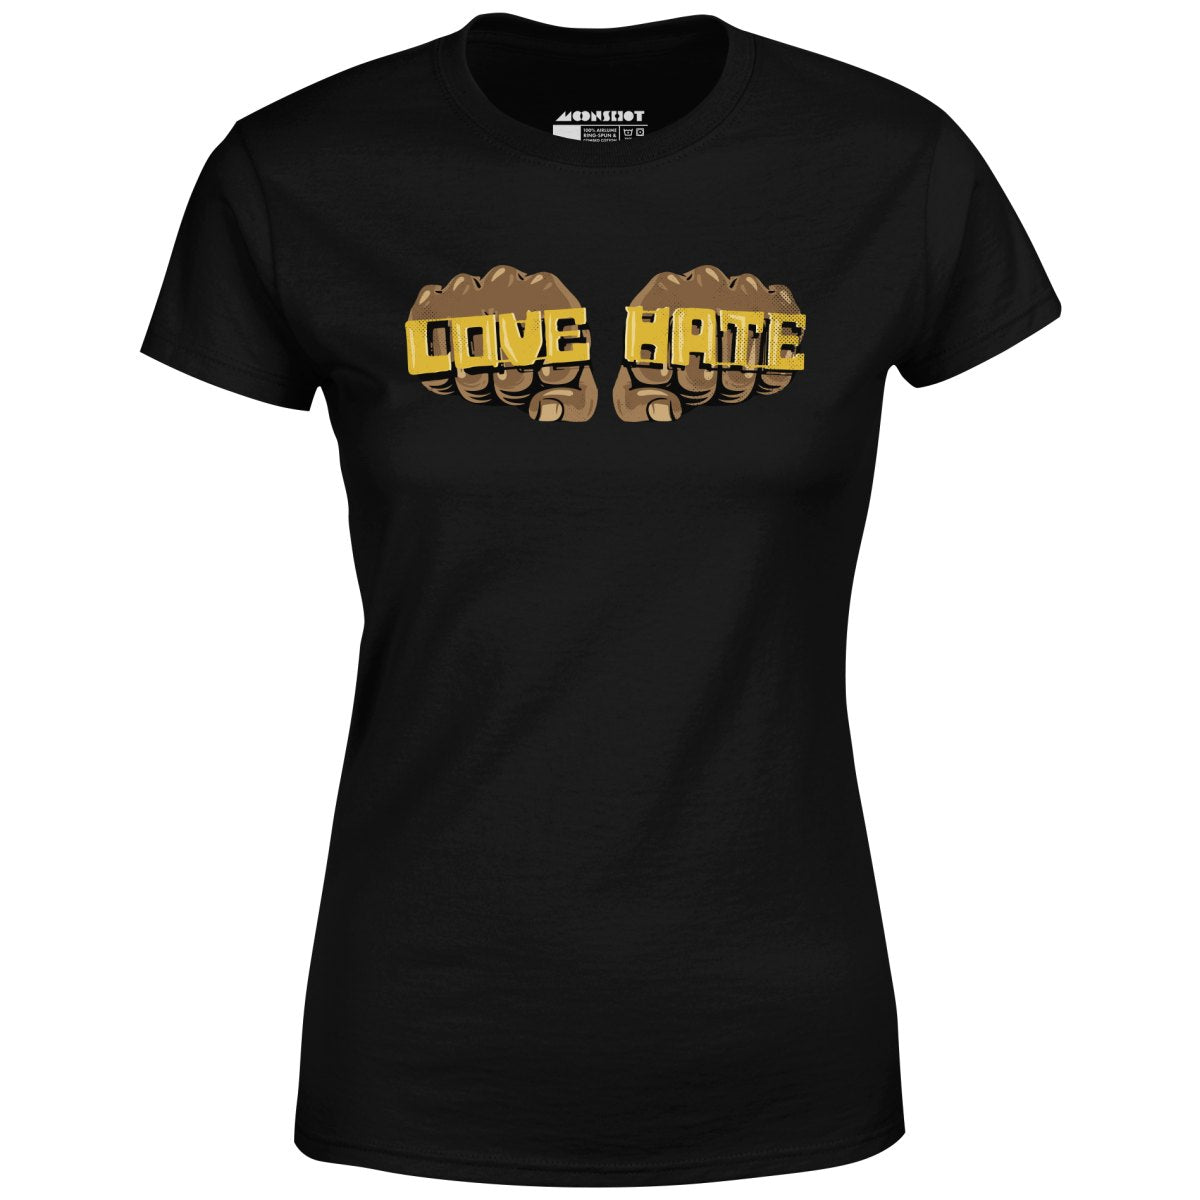 Love Hate - Radio Raheem - Women's T-Shirt